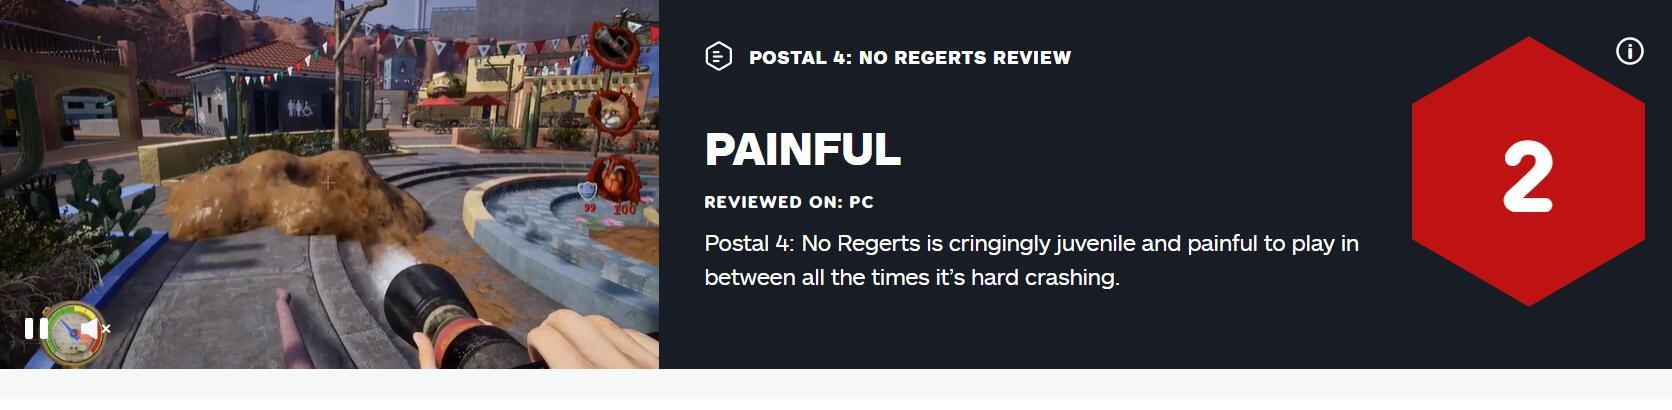 《喋血街头4》获IGN，2分超低评价：坑爹！崩溃边缘！-第2张